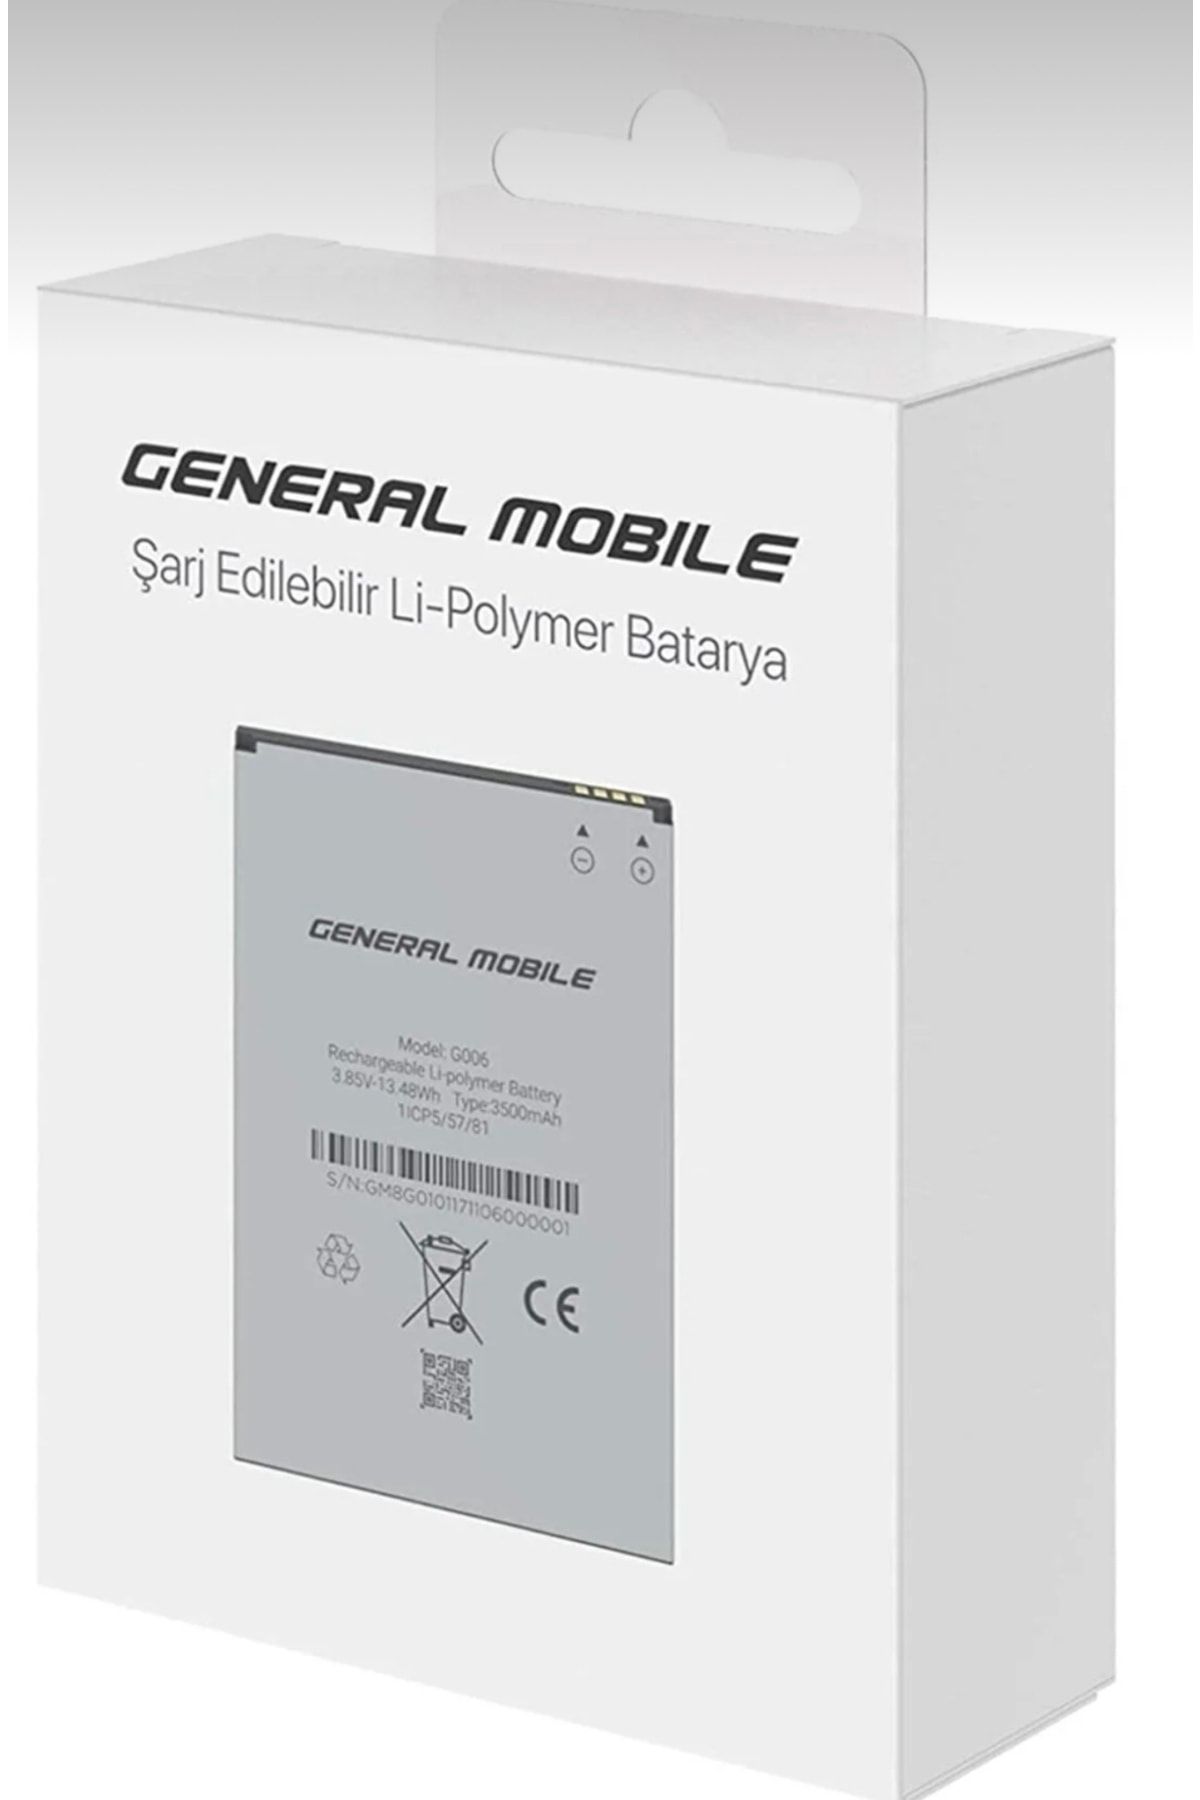 General Mobile General Mobil Gm8 Go - Gm9 Go Batarya Pil 3500 Mah